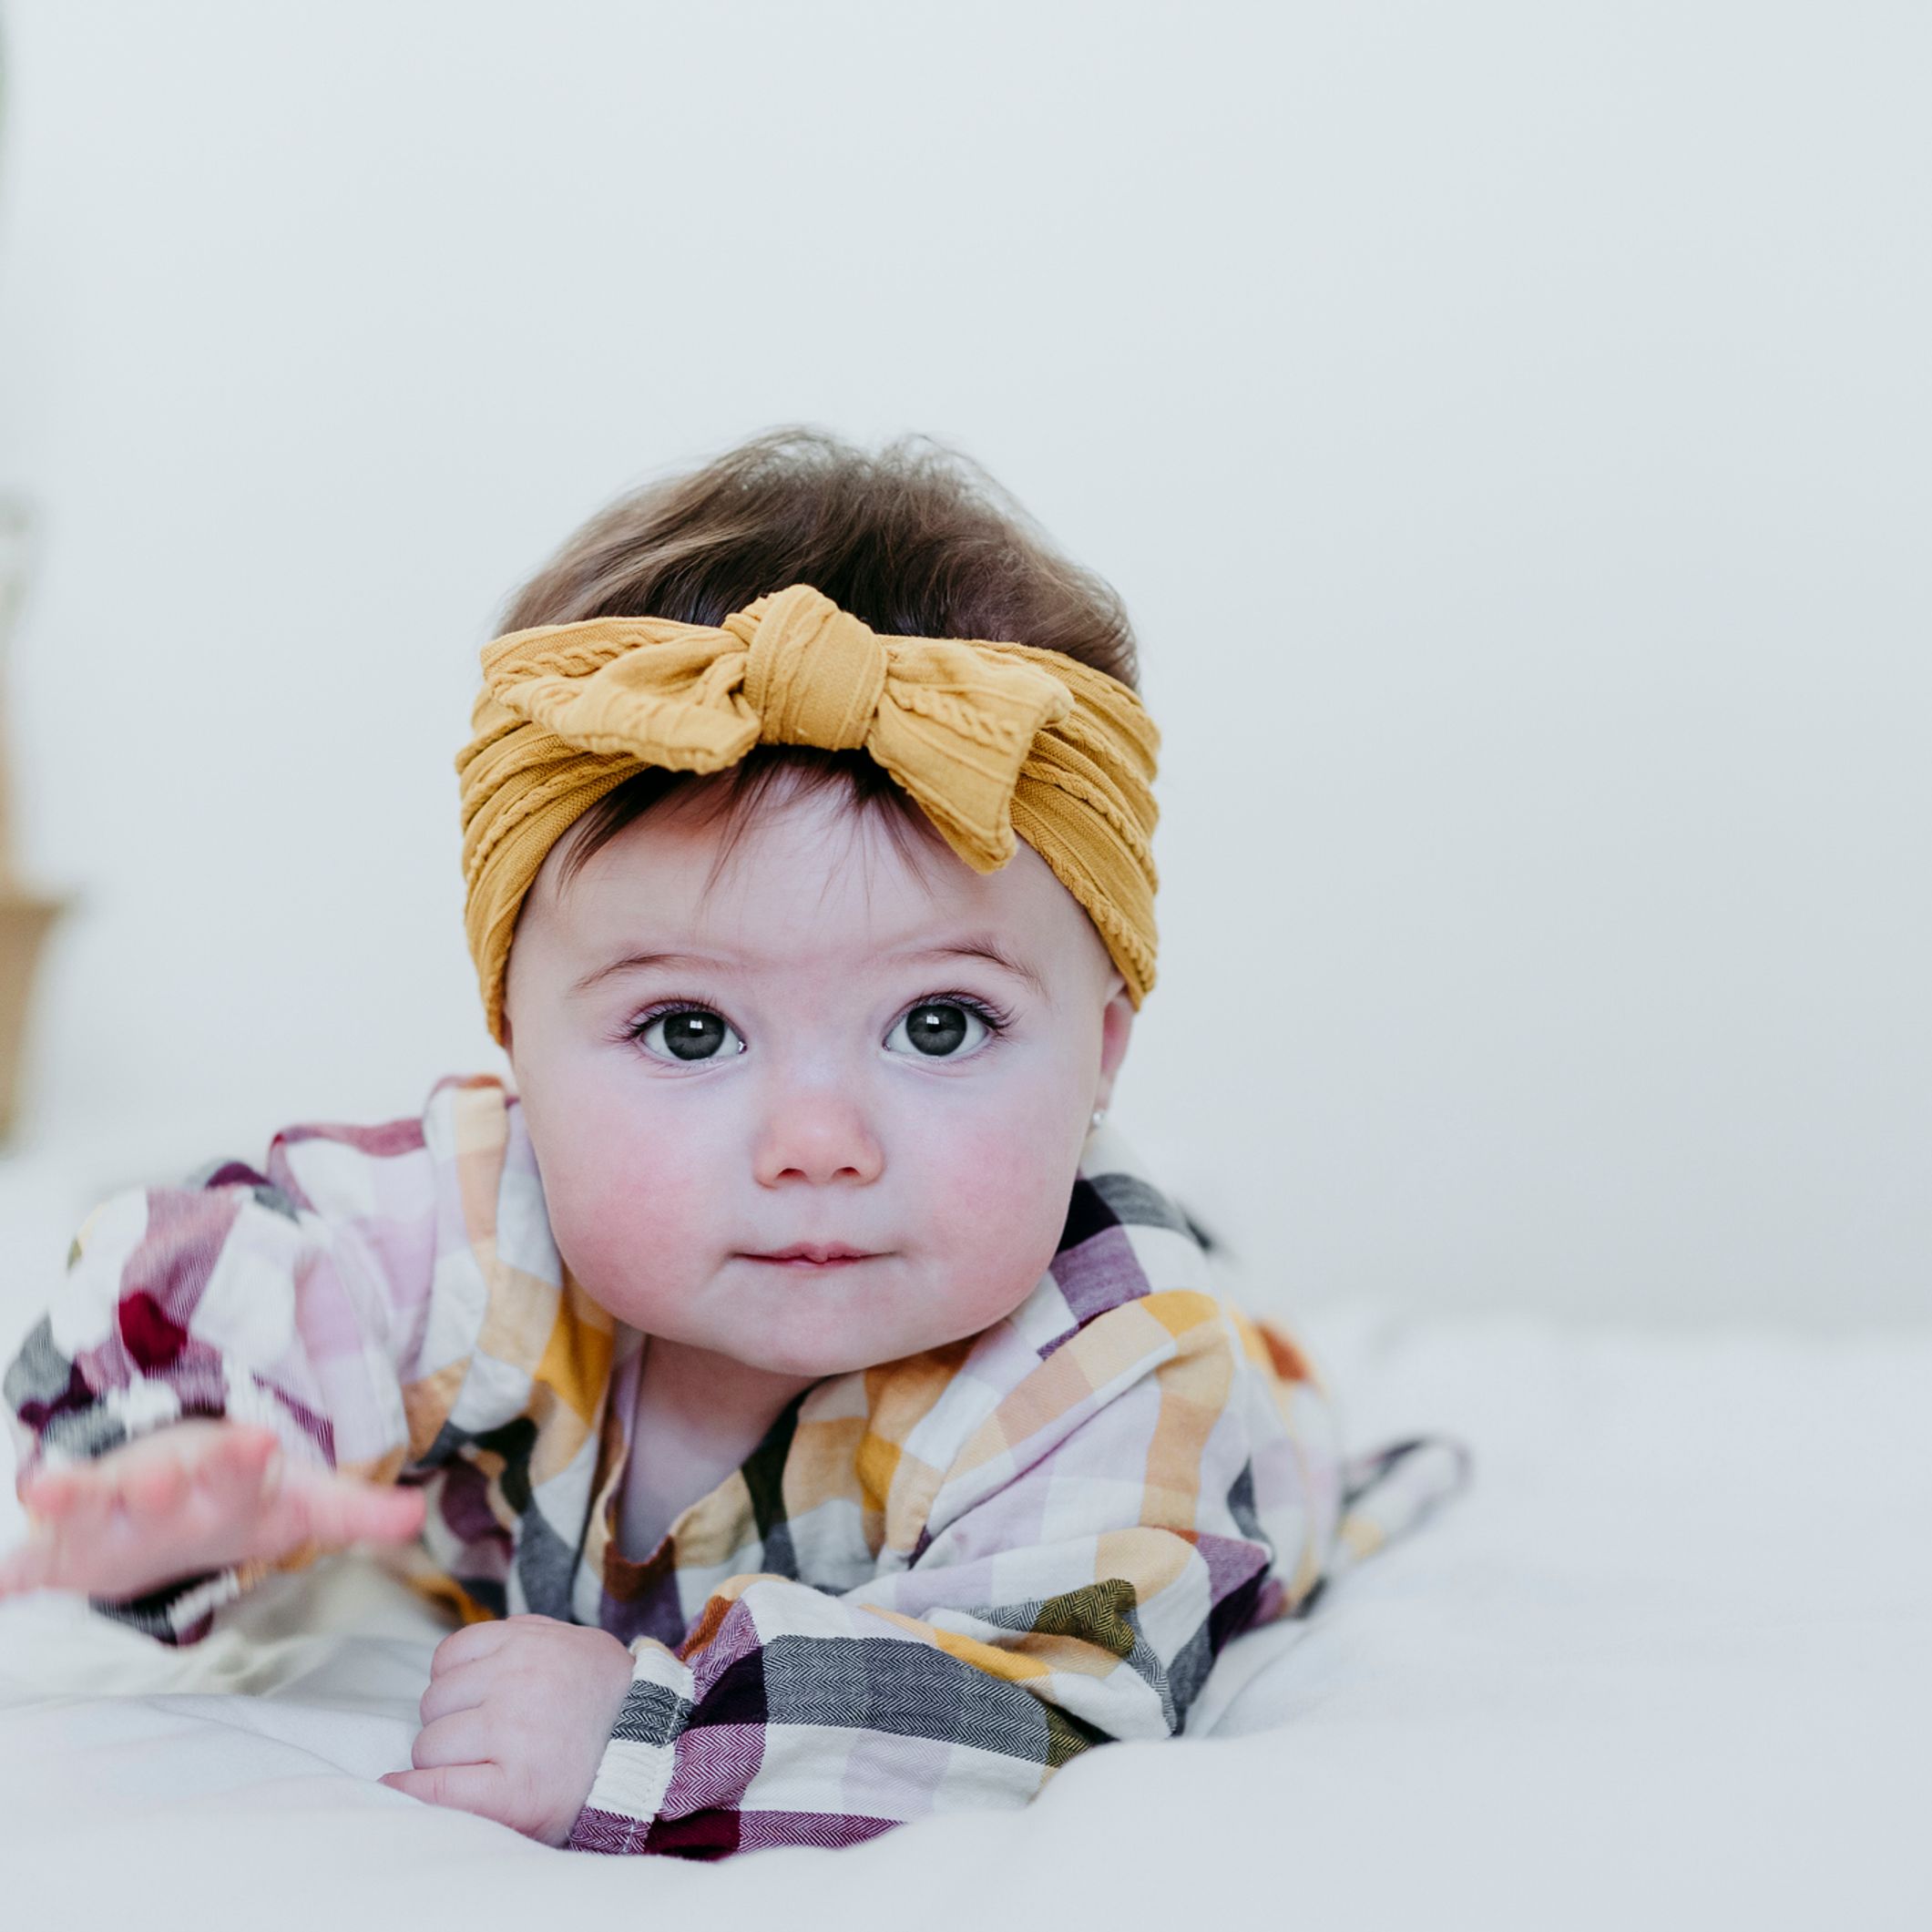 Pourquoi mettre un bandeau à votre bébé est une très mauvaise idée